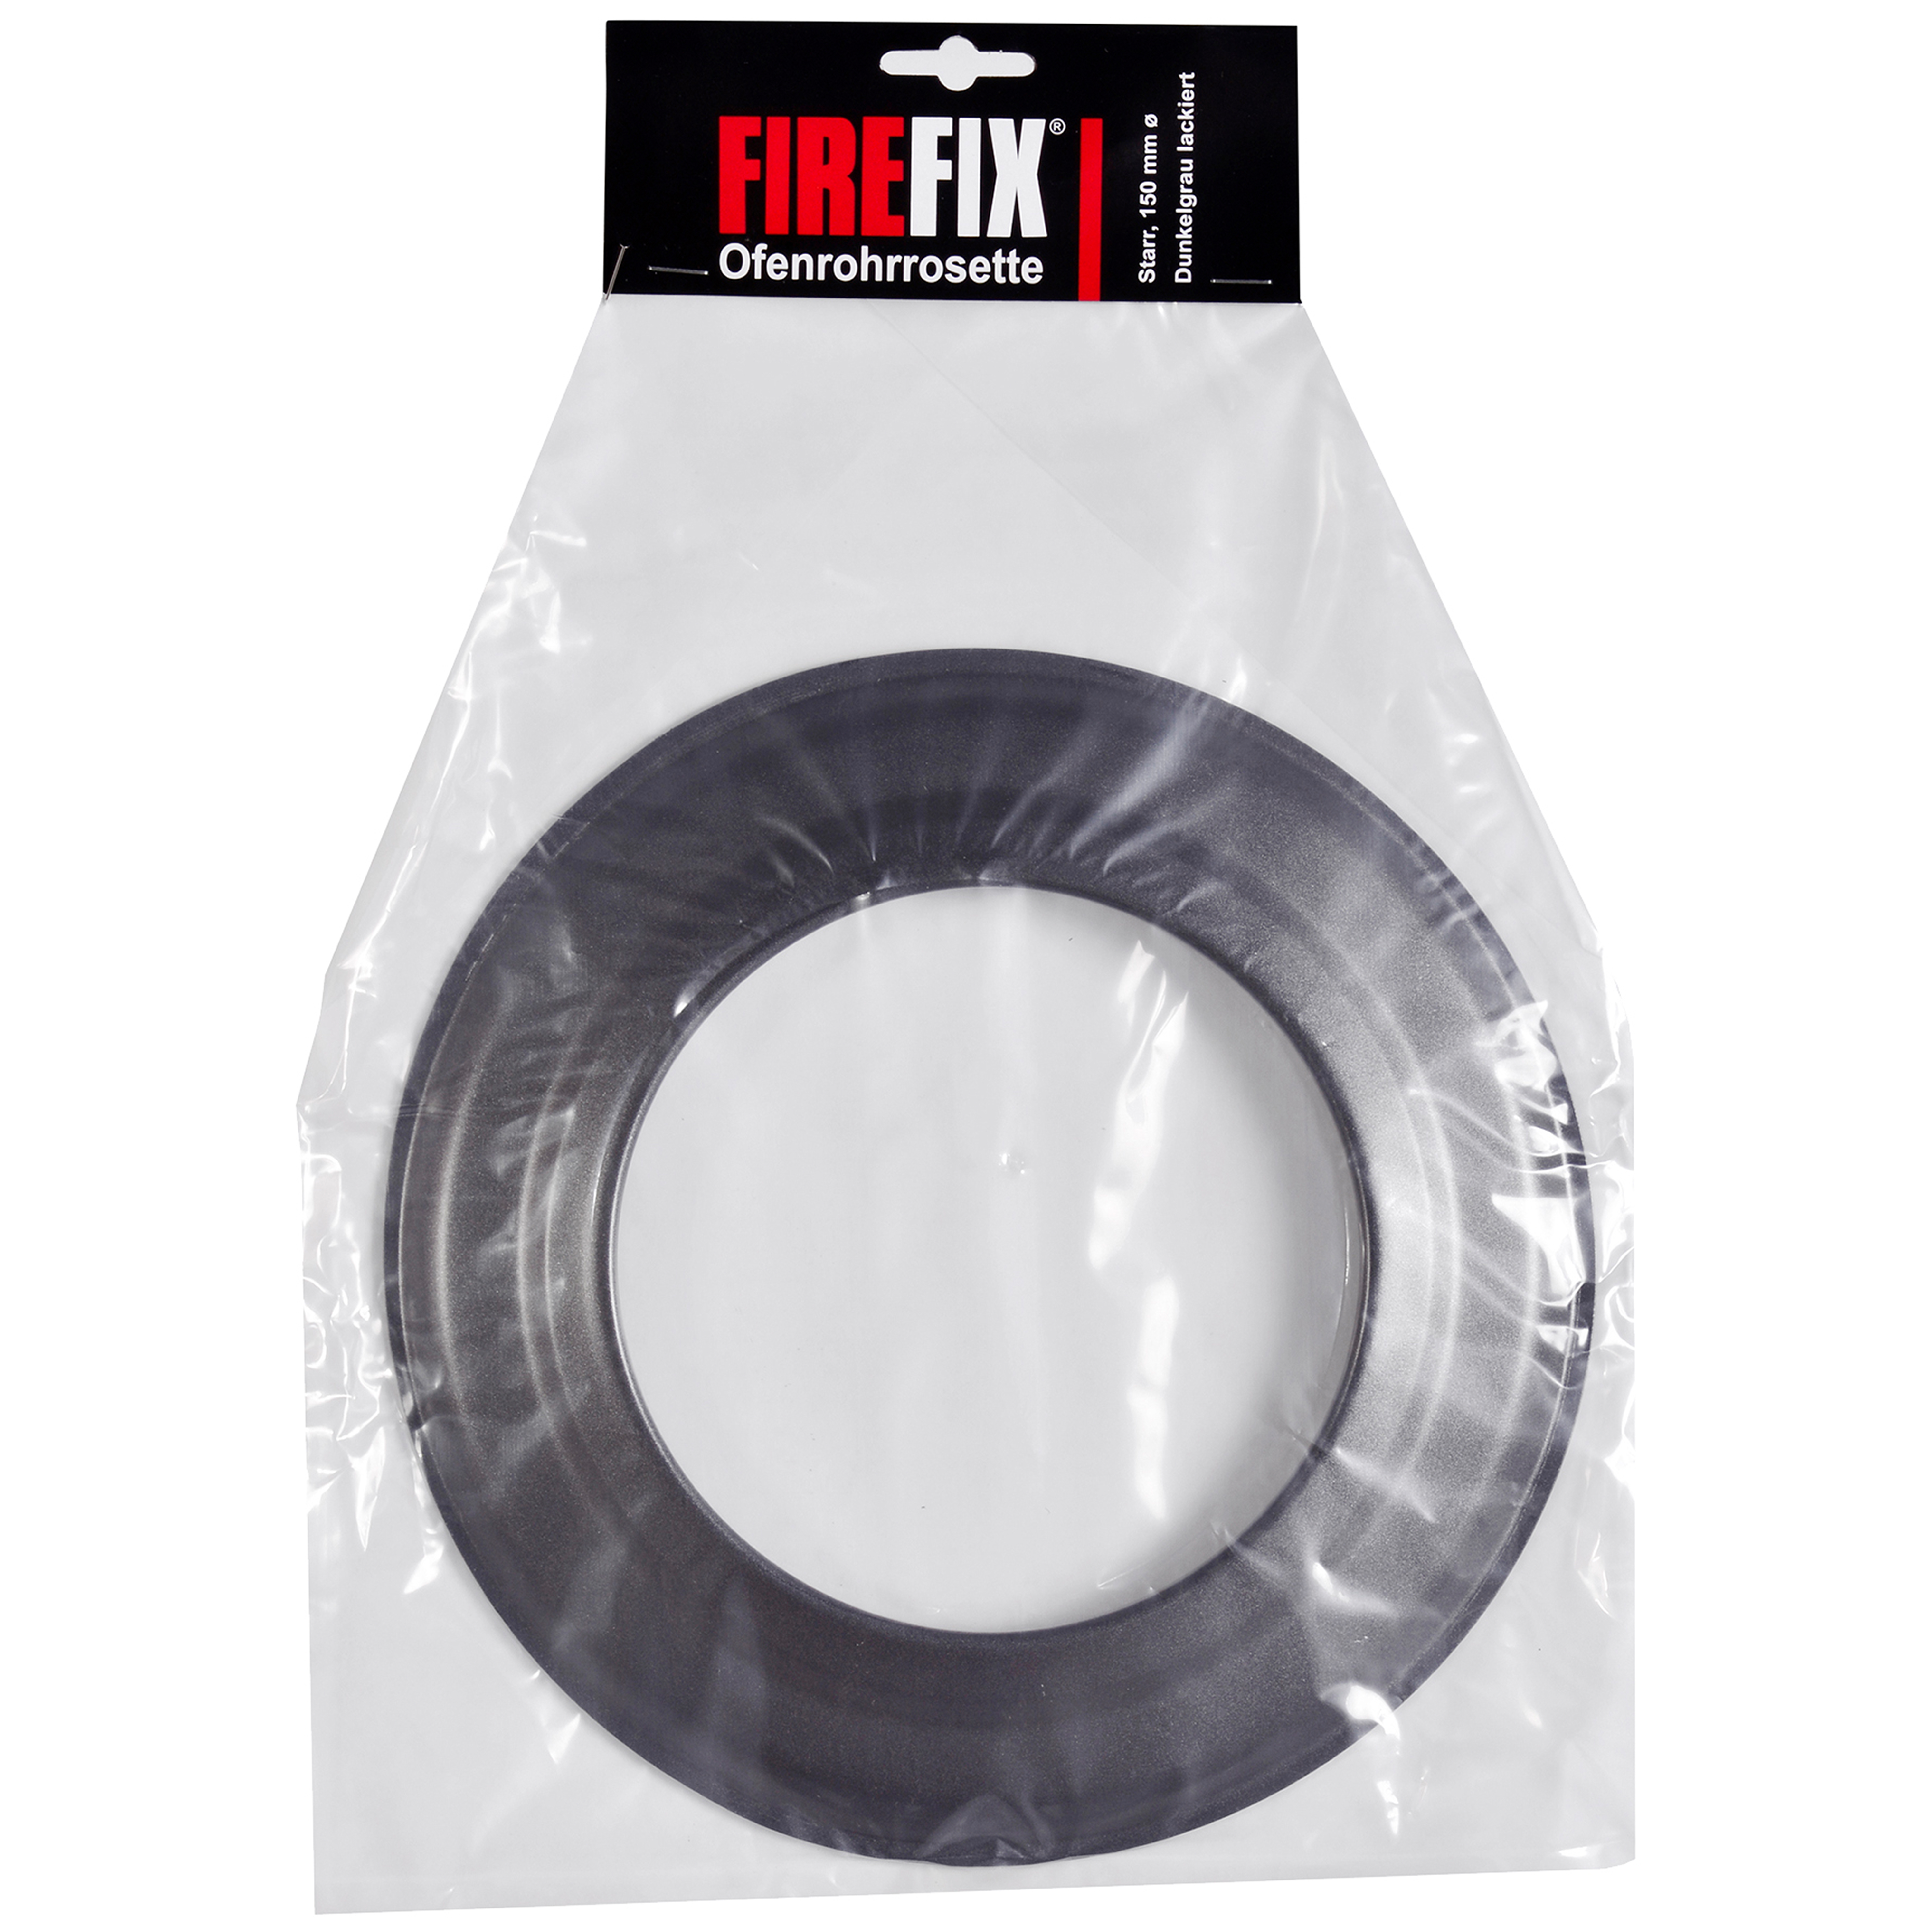 FIREFIX® Rosette für Ø 150 mm Rauchrohre, starr, dunkelgrau